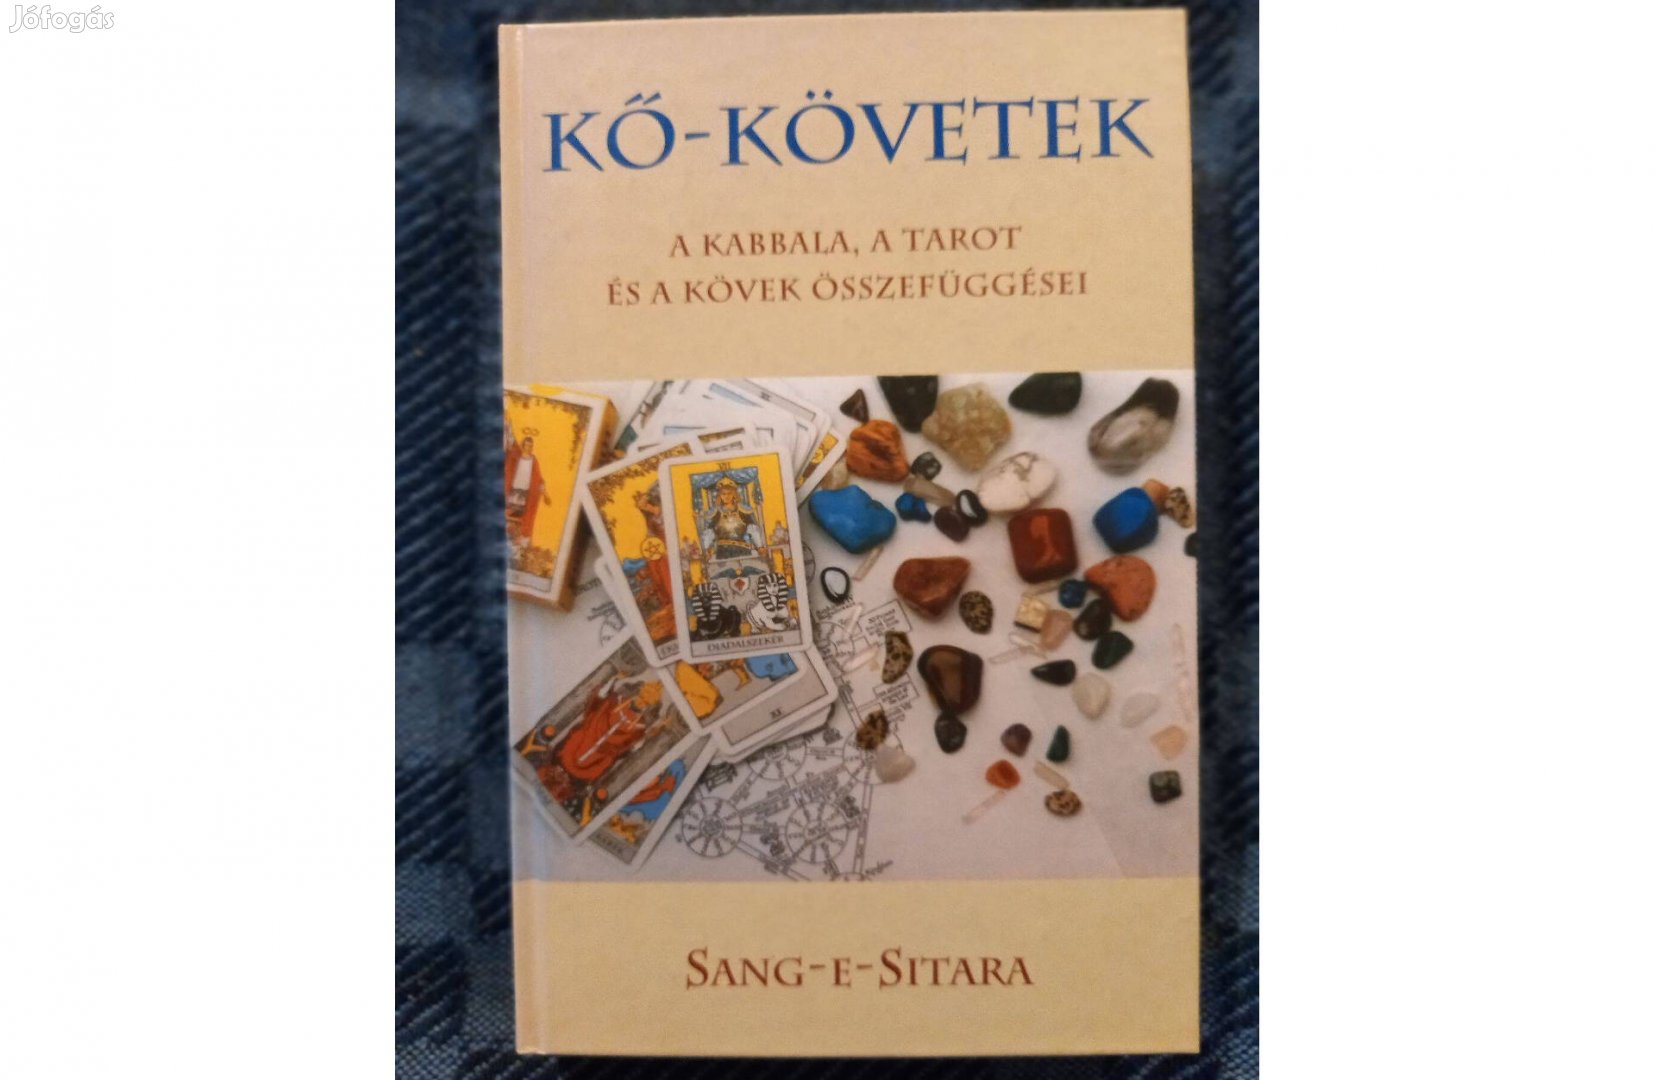 Sang-E-Sitara:Kő-követek(A kabbala a tarot és a kövek.) könyv eladó